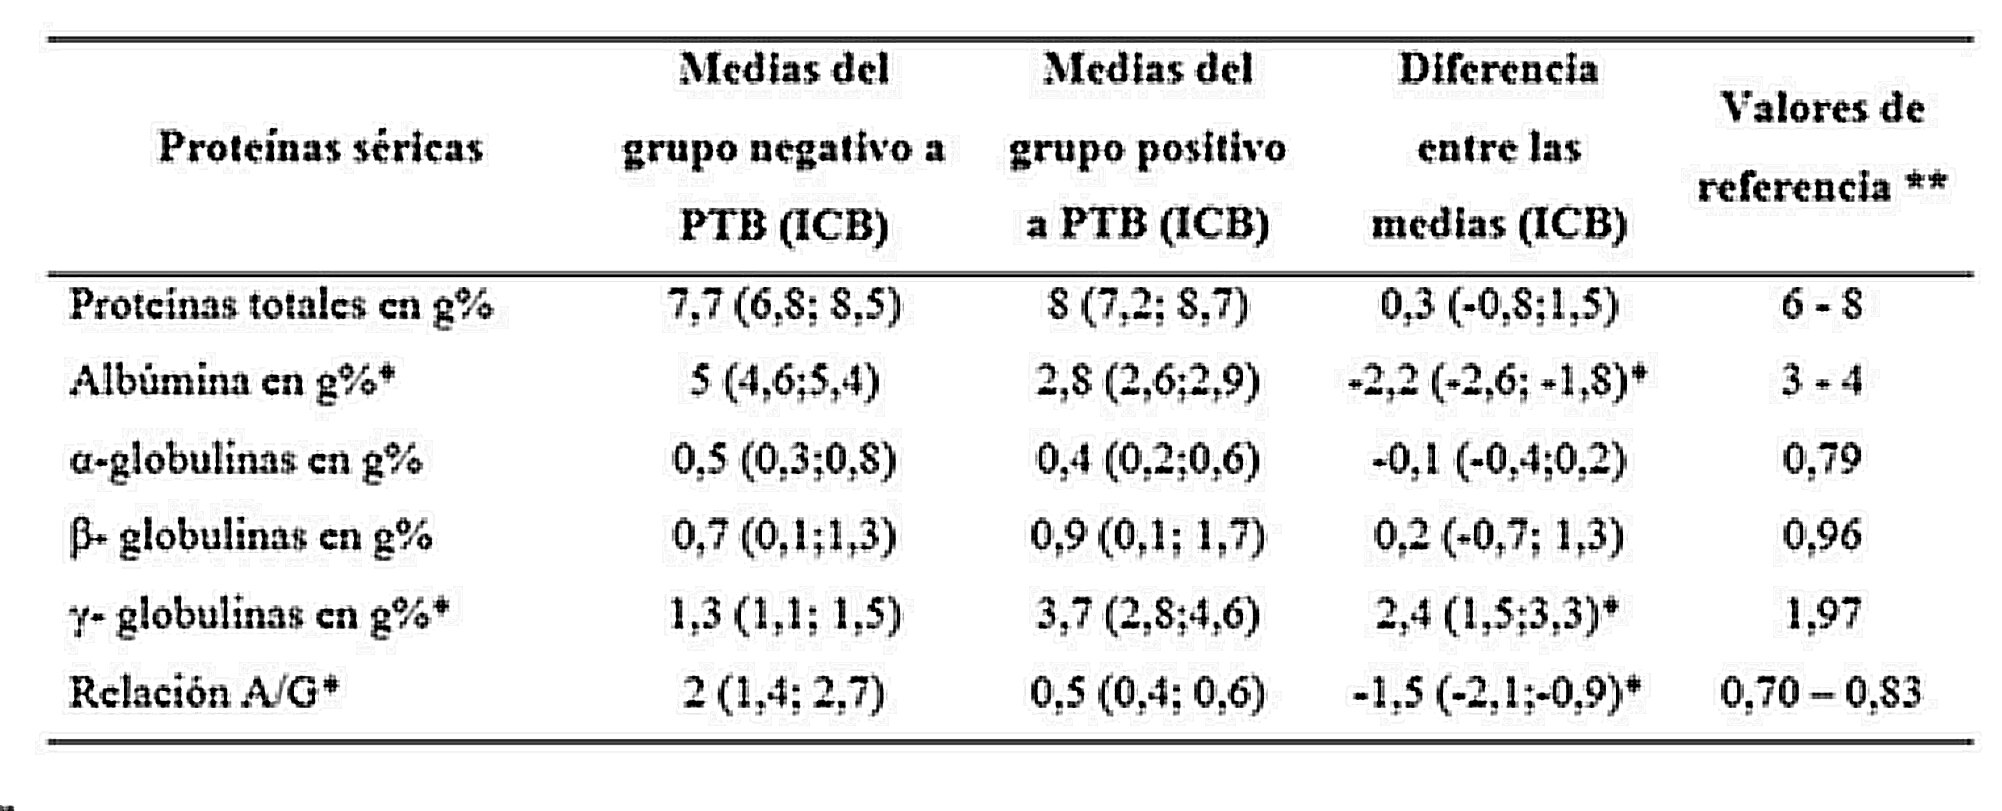 Resultados de las diferencias en las fracciones proteicas entre los grupos de animales positivos y negativos a las pruebas diagnósticas de paratuberculosis bovina analizados con estadística bayesiana.